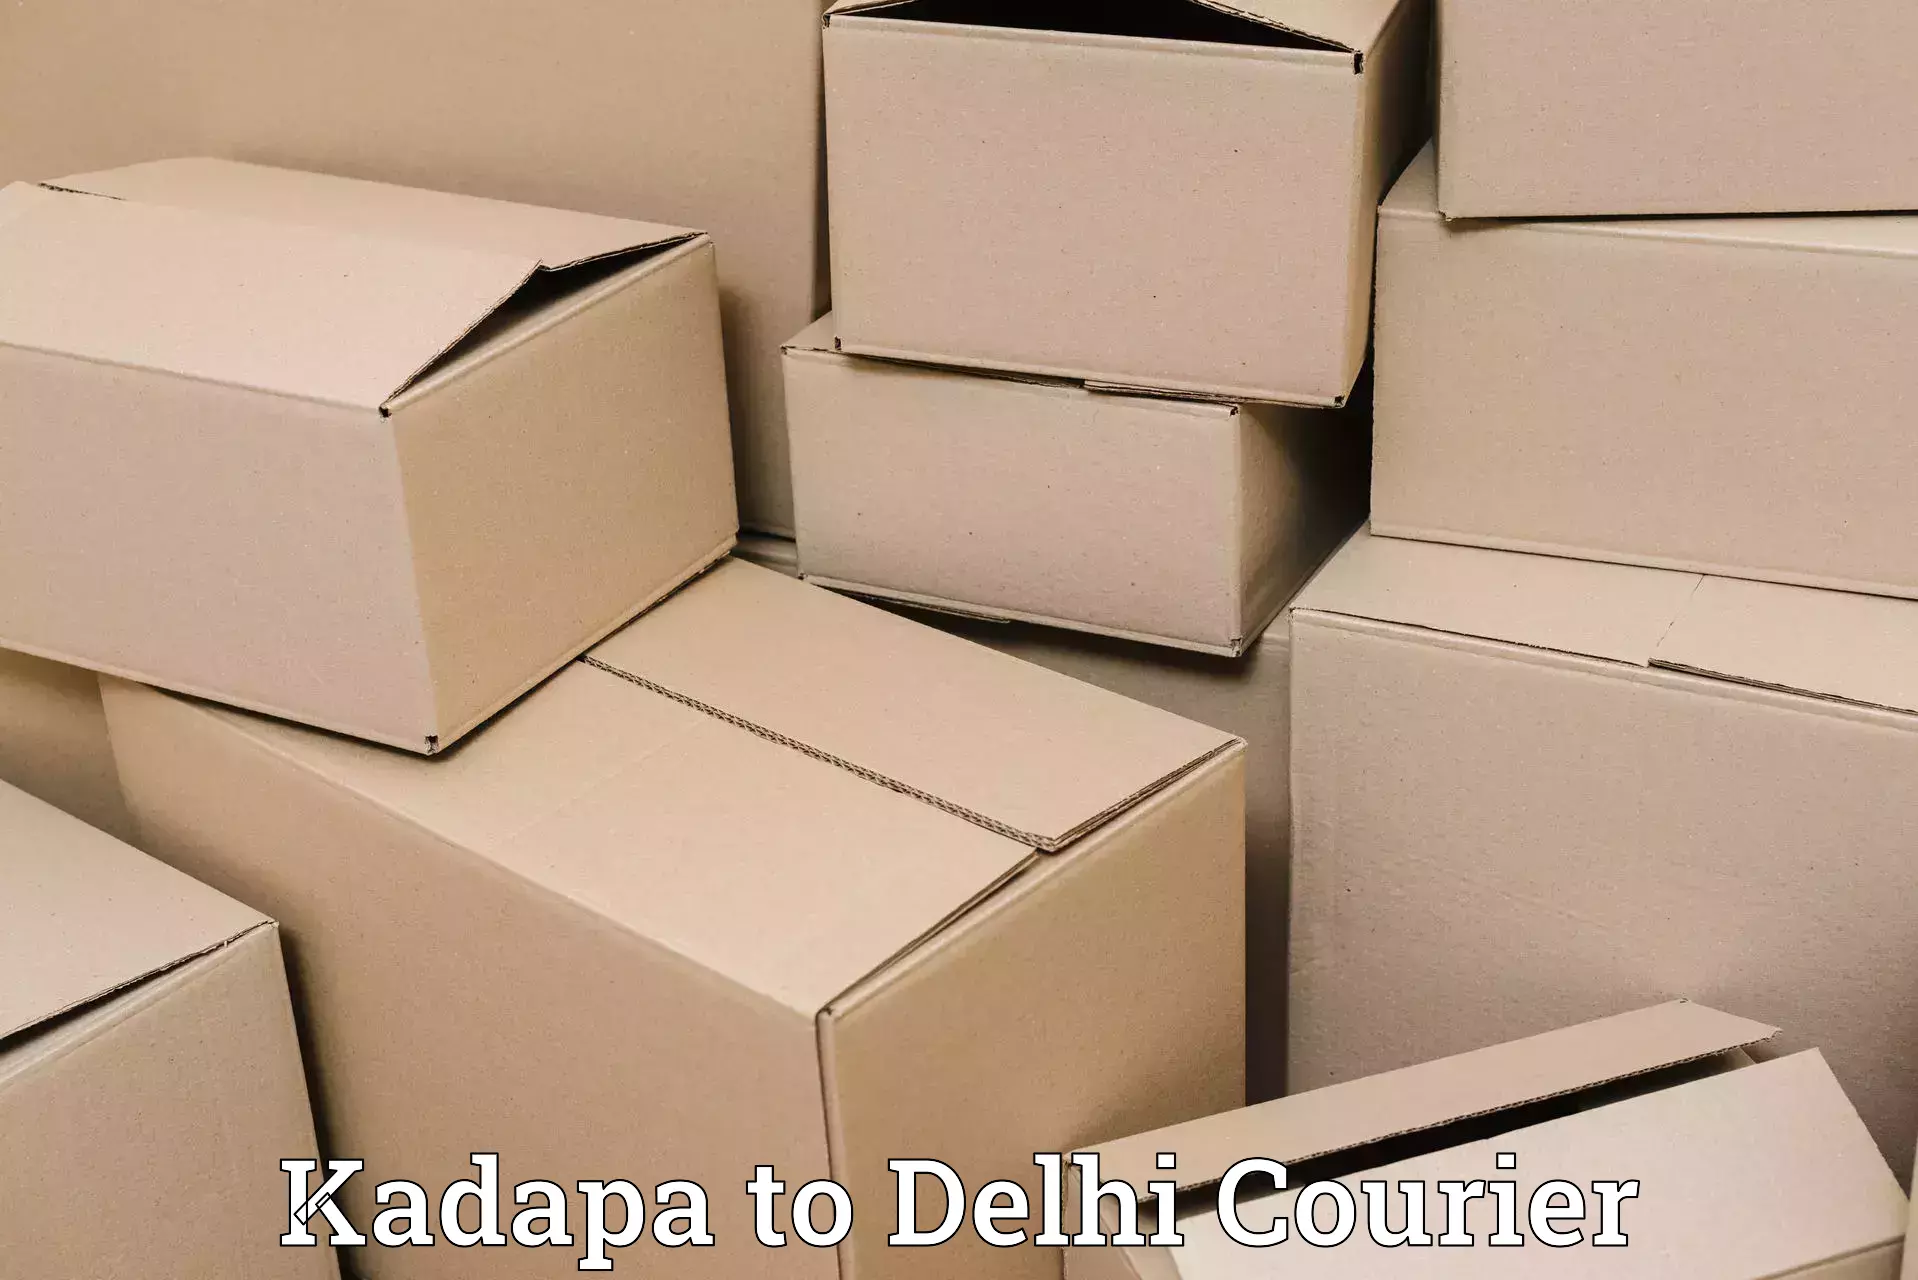 Courier service comparison Kadapa to Jamia Millia Islamia New Delhi